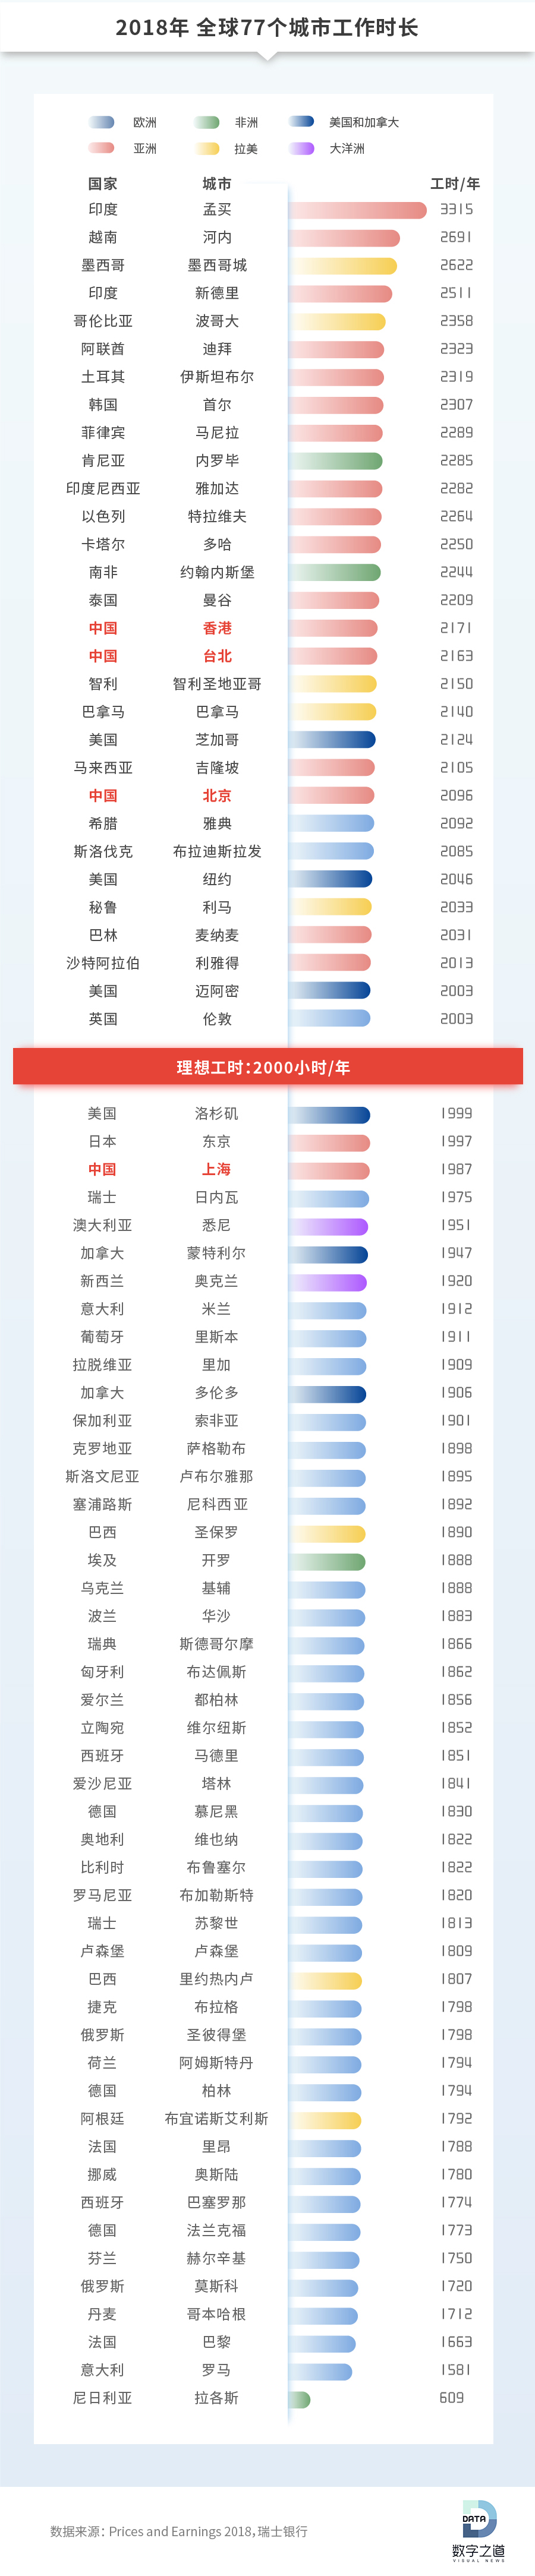 77个城市 谁是地表最强劳模? 中国仅1成人敢“硬气休假”